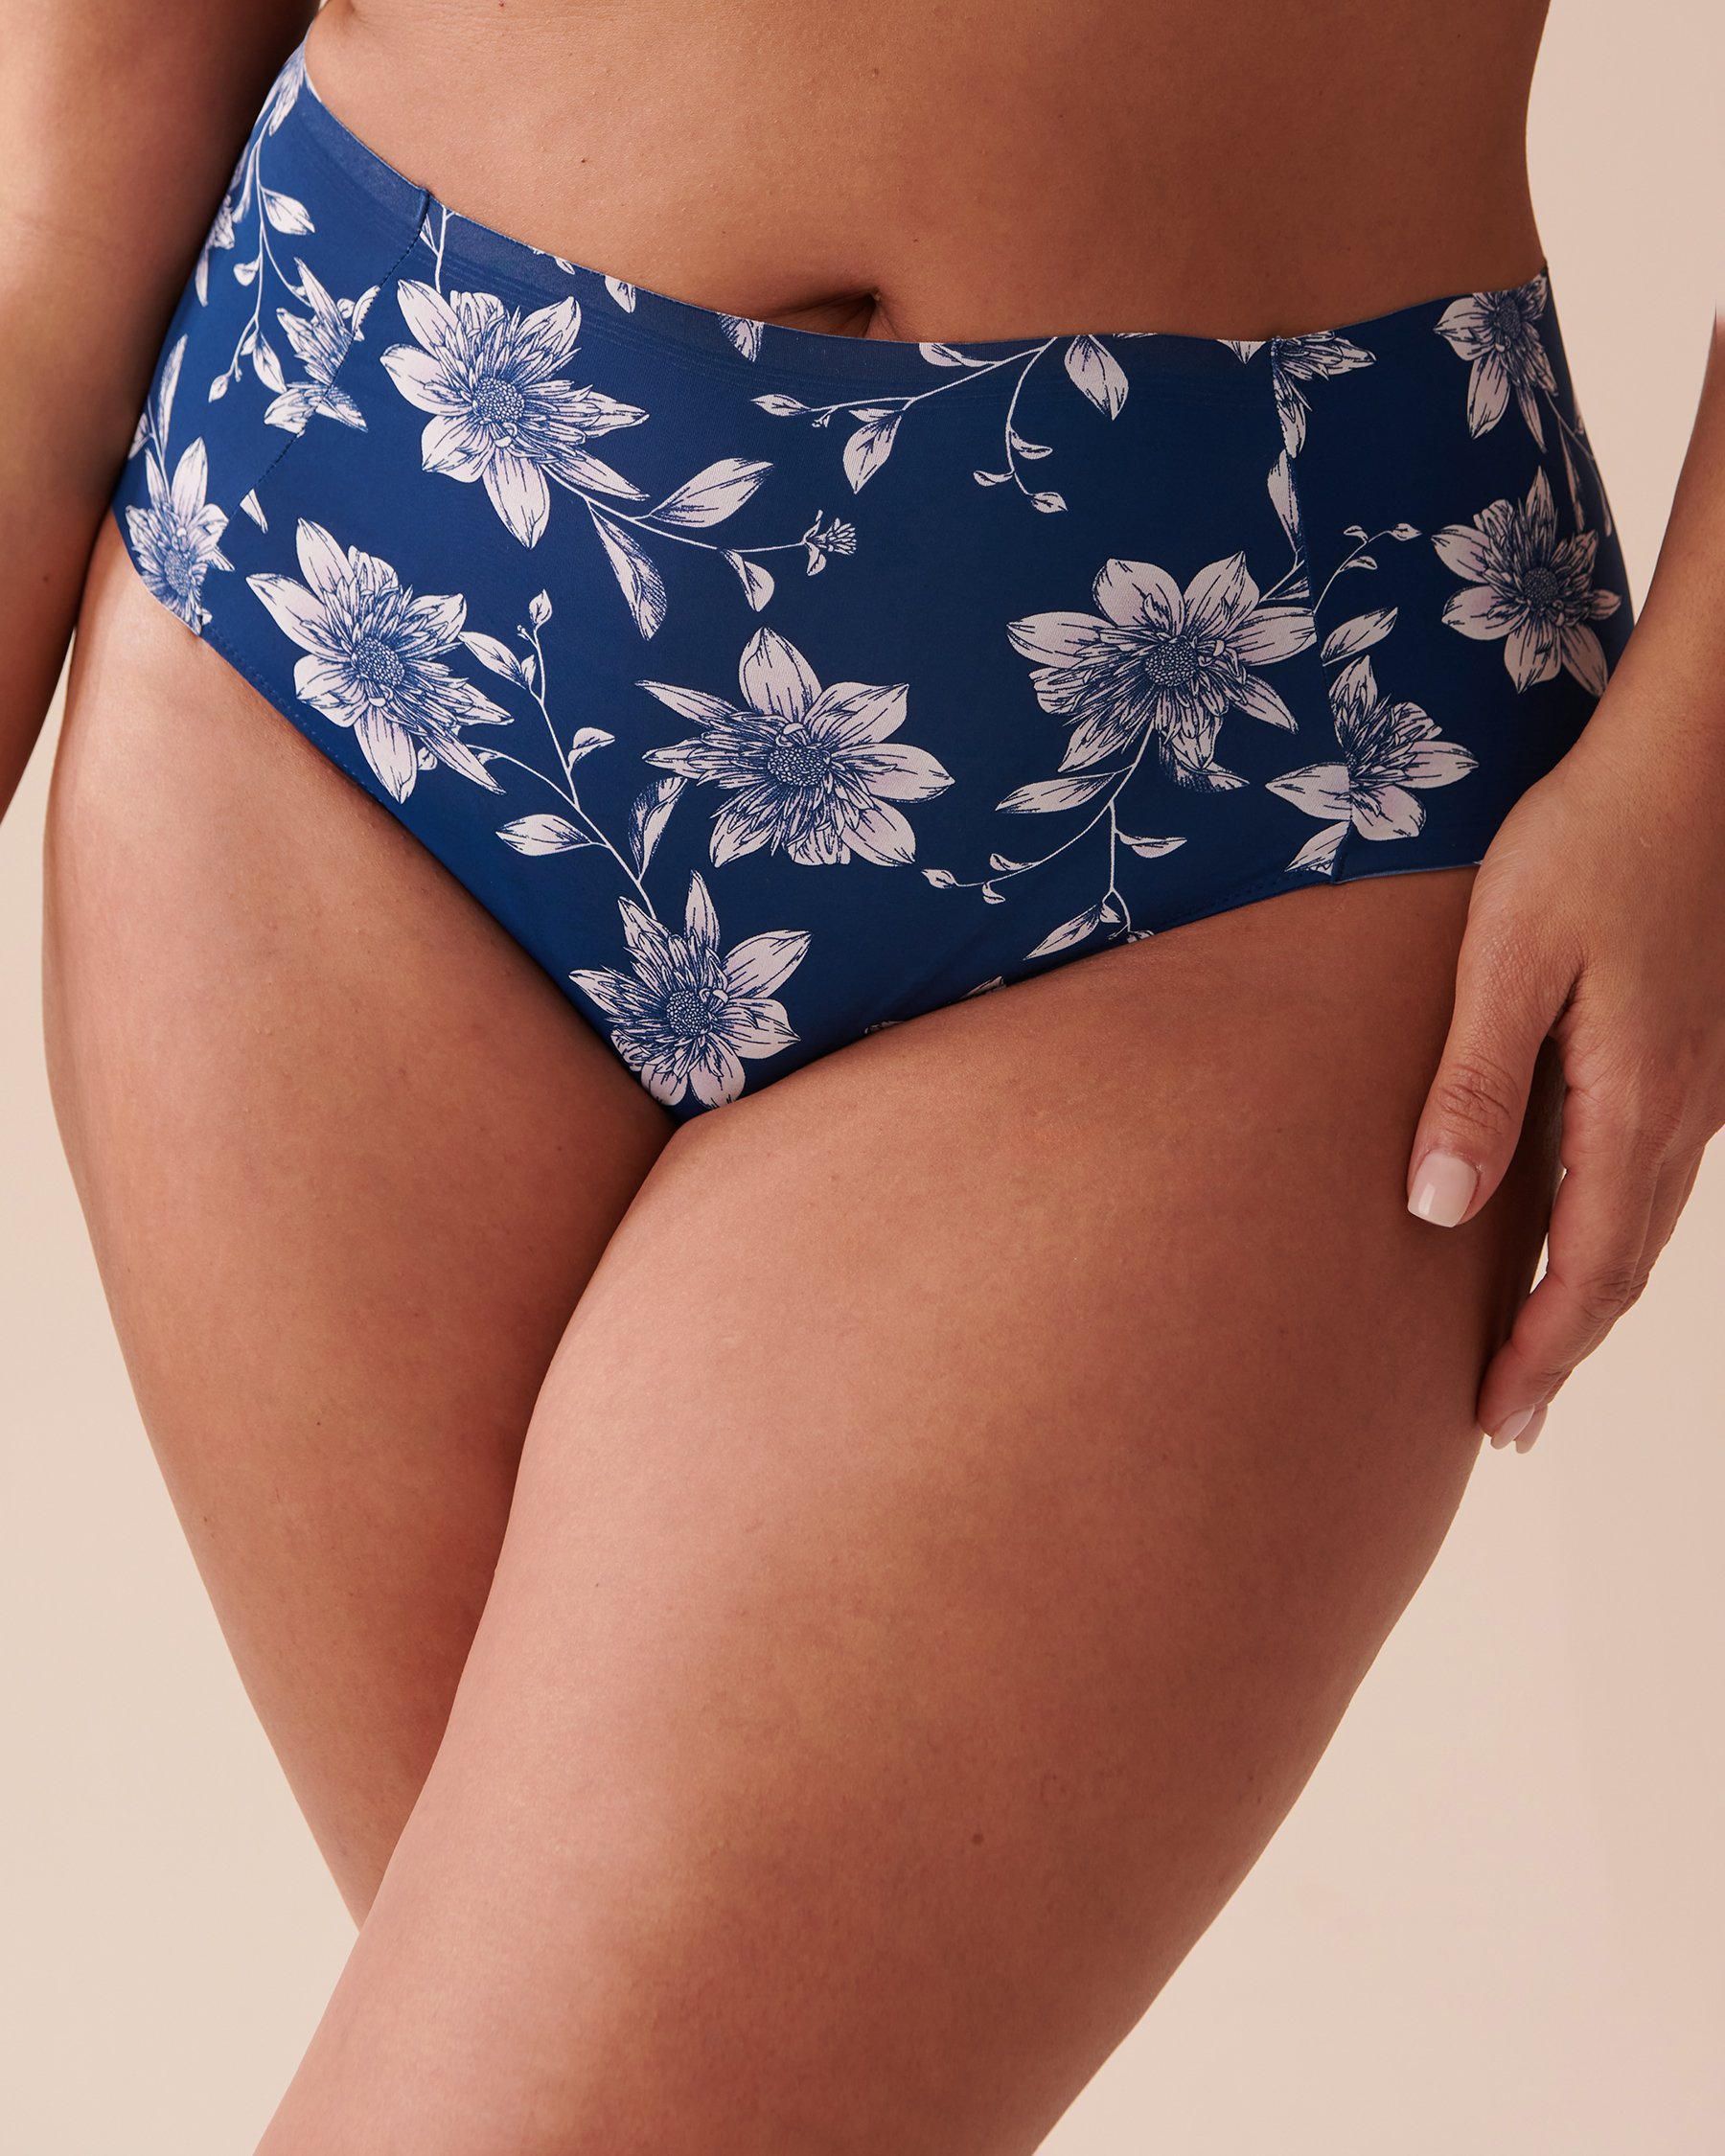 Buy Bra Panty Sets online - Faverdeal